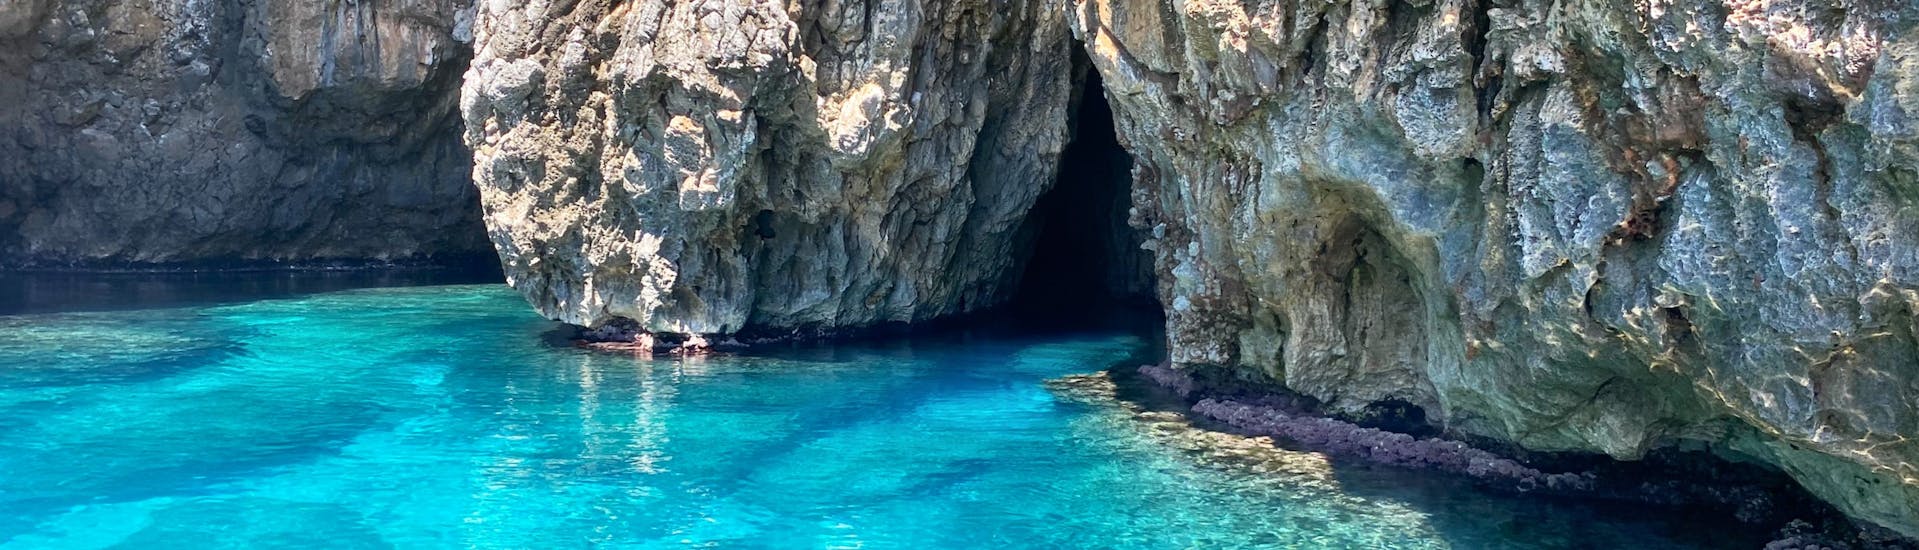 Balade en bateau vers les grottes de Santa Maria di Leuca avec snorkeling et apéritif.